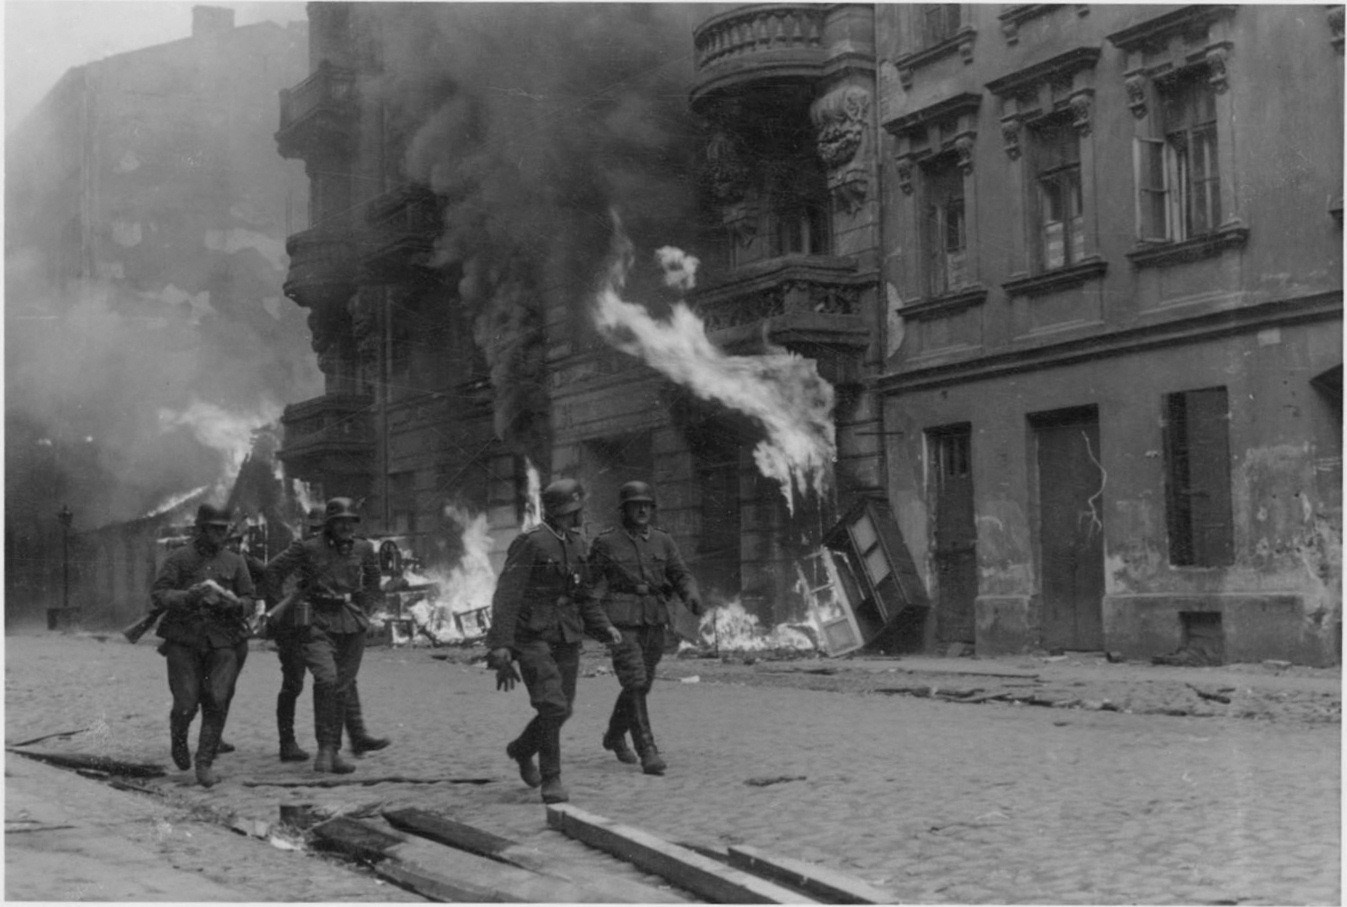 קציני אס-אס ברחובות גטו ורשה באפריל 1943. הנאצים החלו את חיסול הגטו ב-19 אפריל 1943 והופתעו מכך ש-70,000 שרידי הגטו מרדו, בהובלת תנועות הנוער הציוניות. צילום היסטורי, צלם לא ידוע